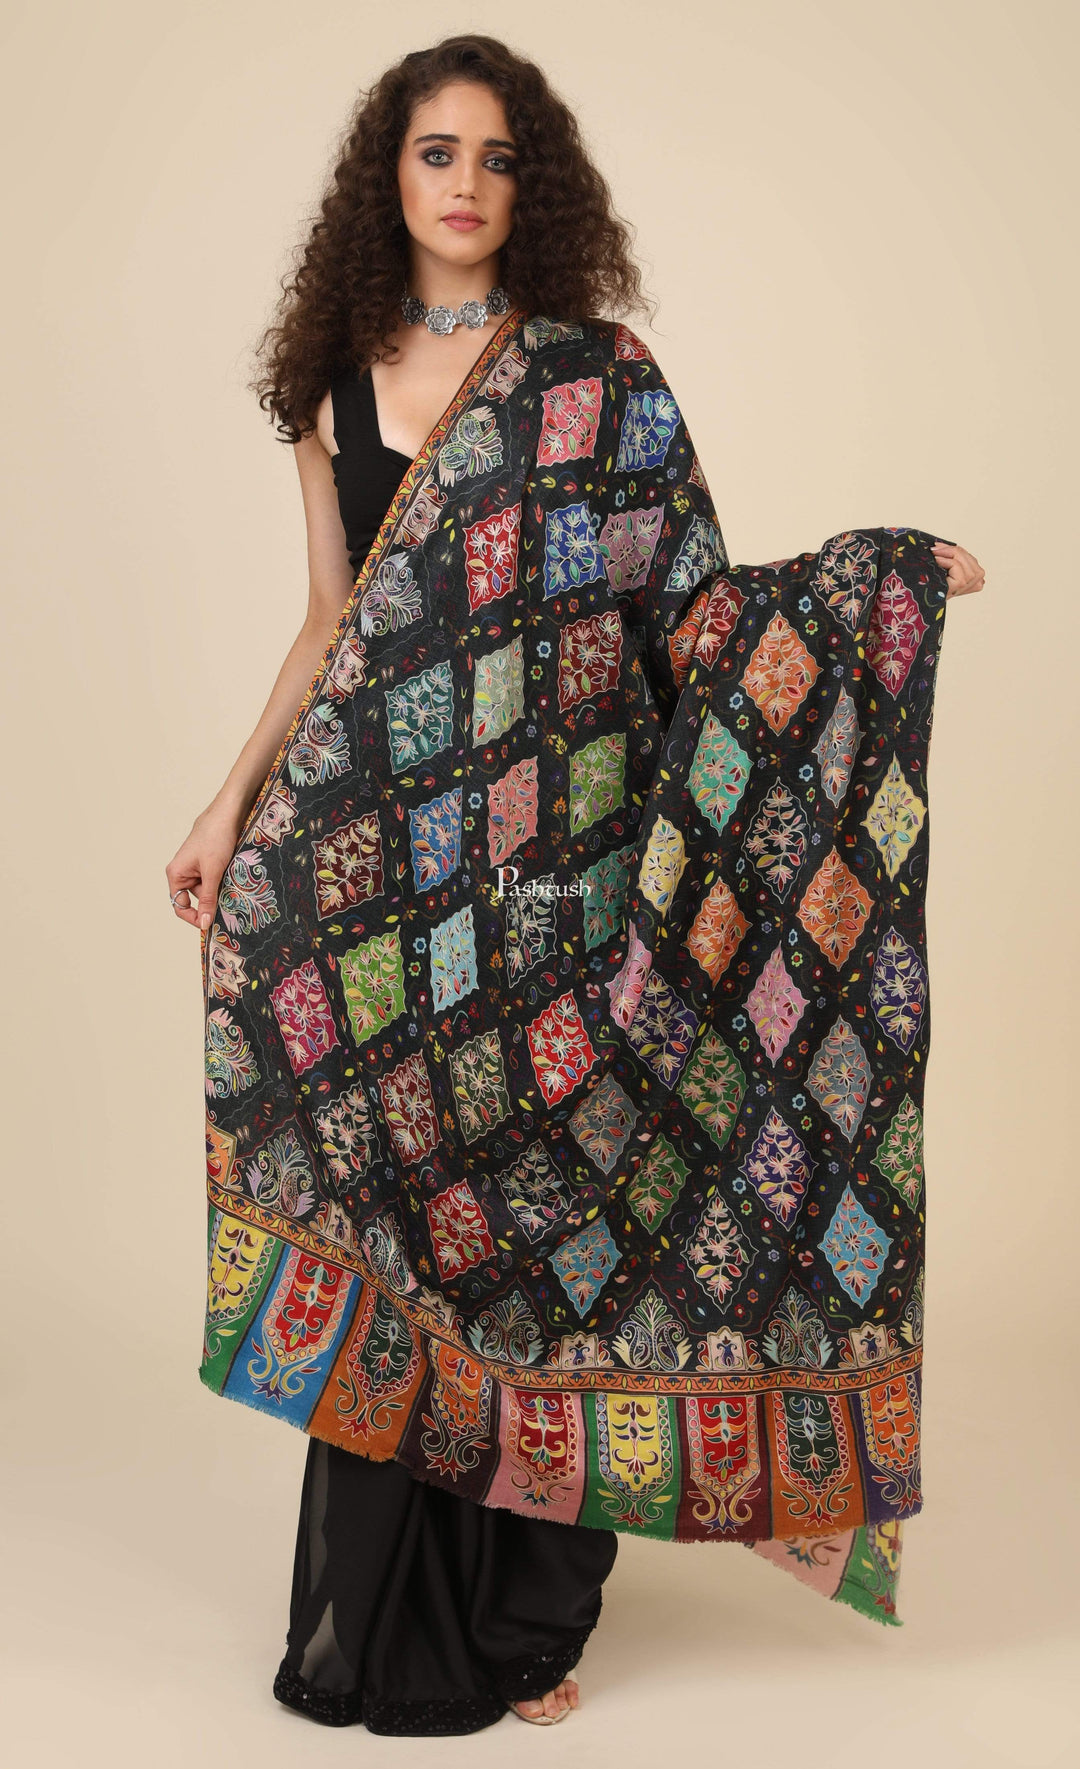 Pashtush India 114x228 Pashtush Womens Pure Wool, Hand Embroidered Kalamkari Shawl, With Woolmark Certificate